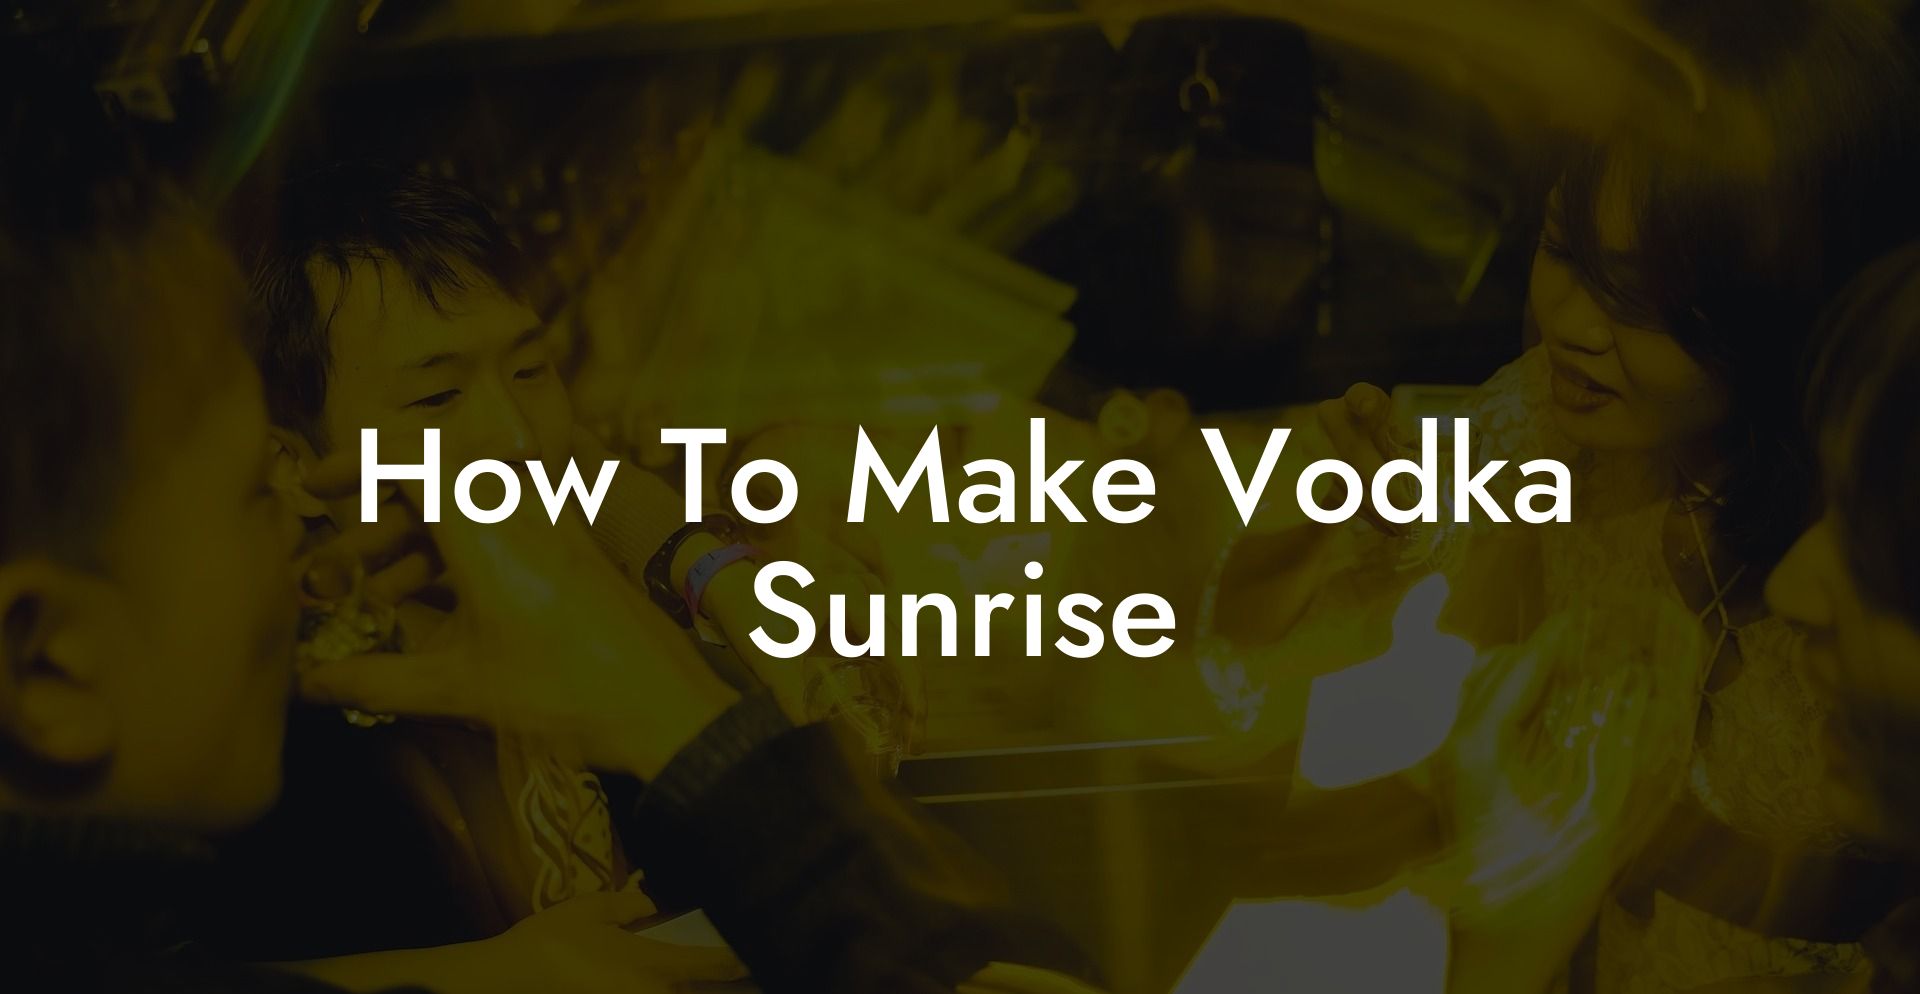 How To Make Vodka Sunrise